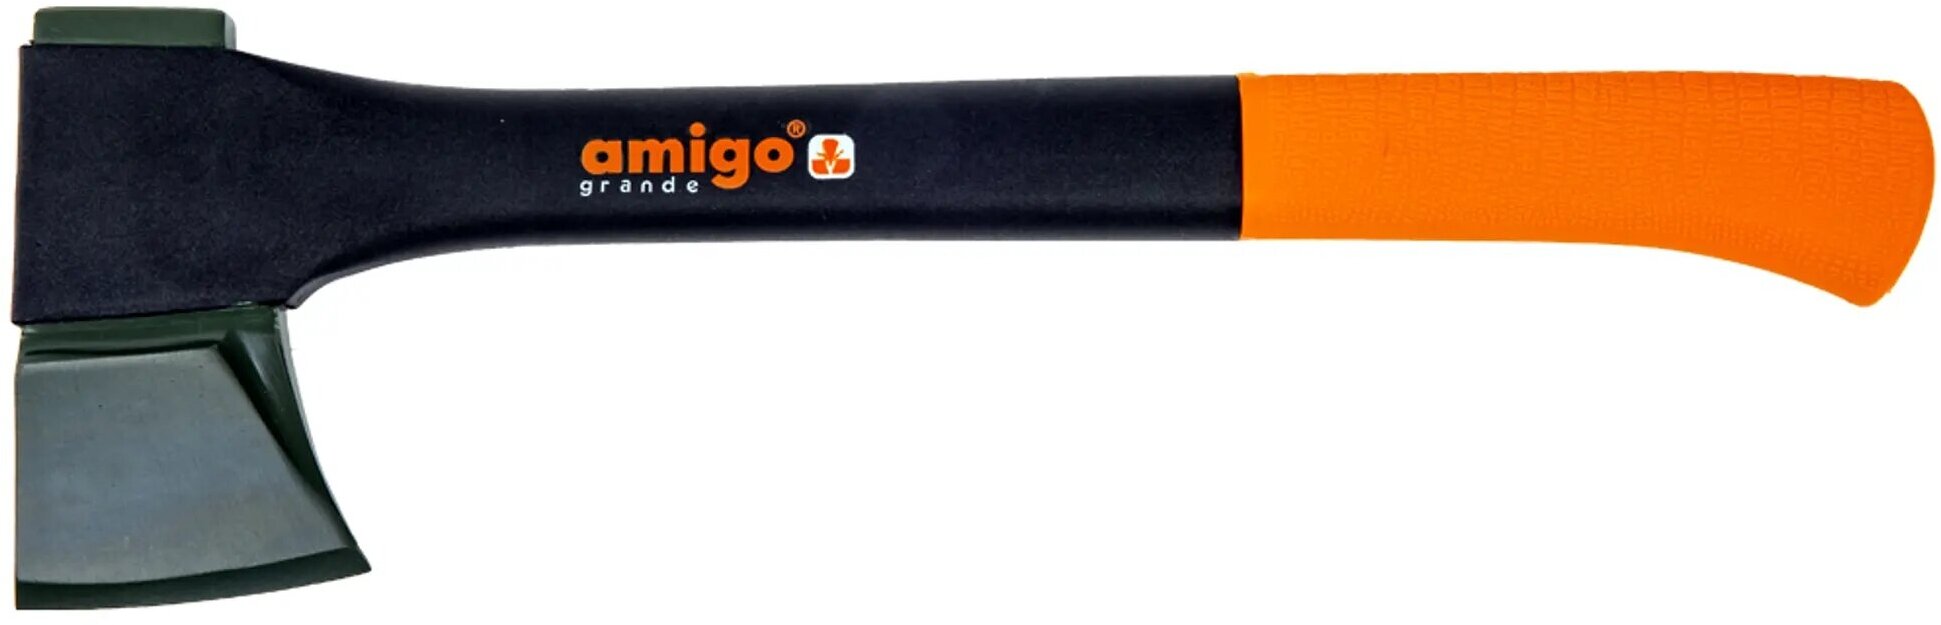 Колун универсальный кованый Amigo (74476) композитная рукоятка 440 мм 0,99 кг